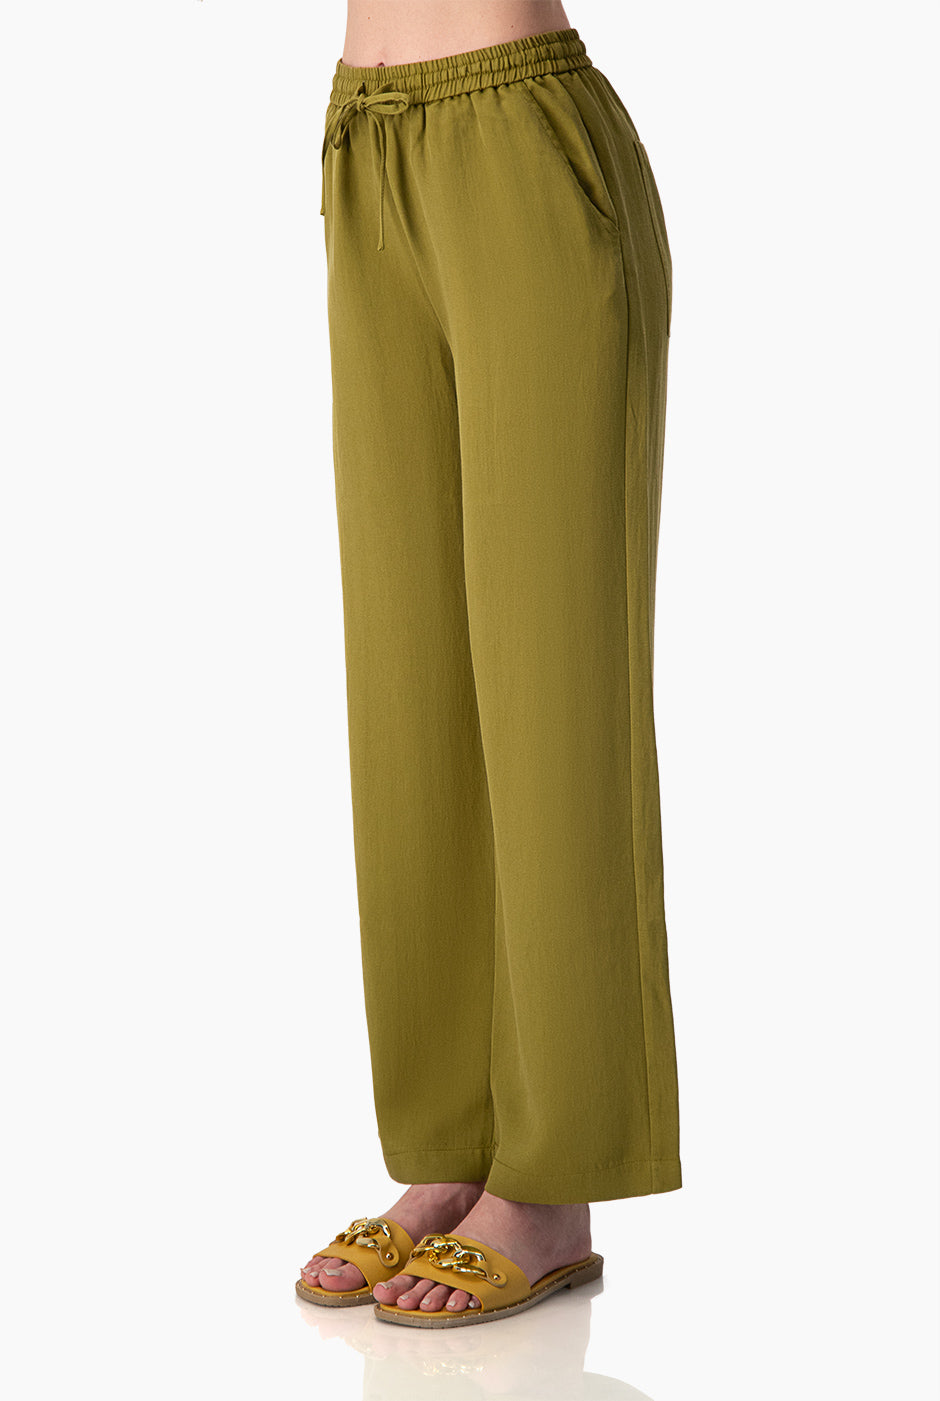 Pantalón Rústico Composición Lino Verde